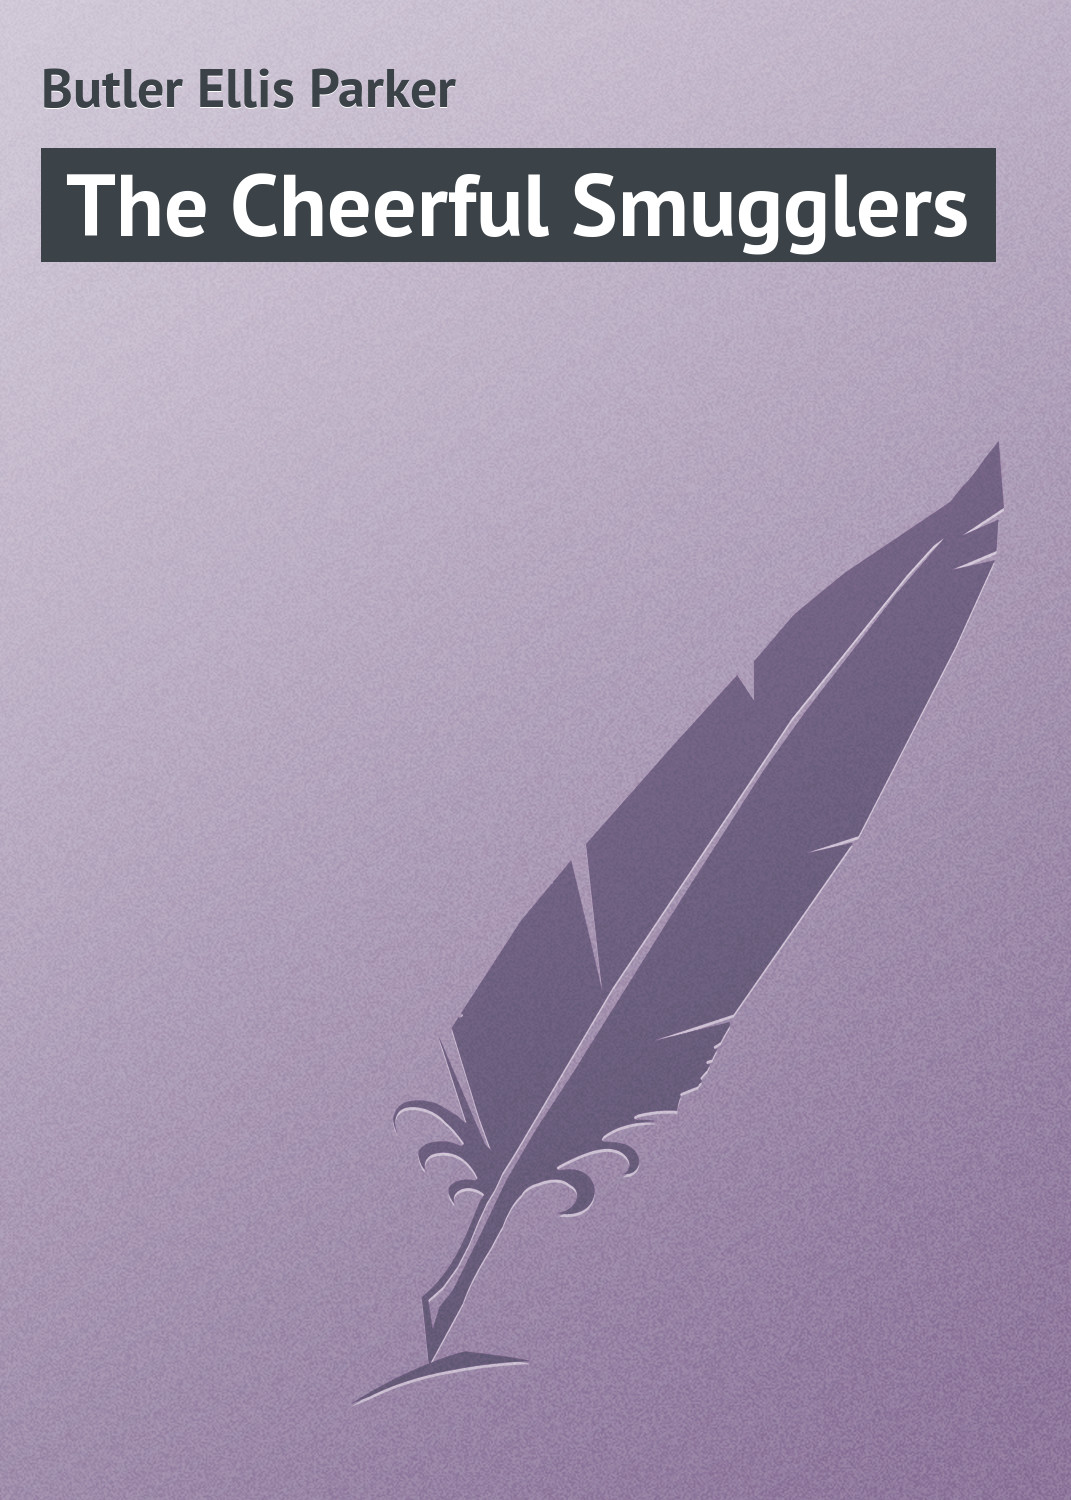 Книга The Cheerful Smugglers из серии , созданная Ellis Butler, может относится к жанру Зарубежный юмор, Зарубежная классика, Иностранные языки. Стоимость электронной книги The Cheerful Smugglers с идентификатором 23158347 составляет 5.99 руб.